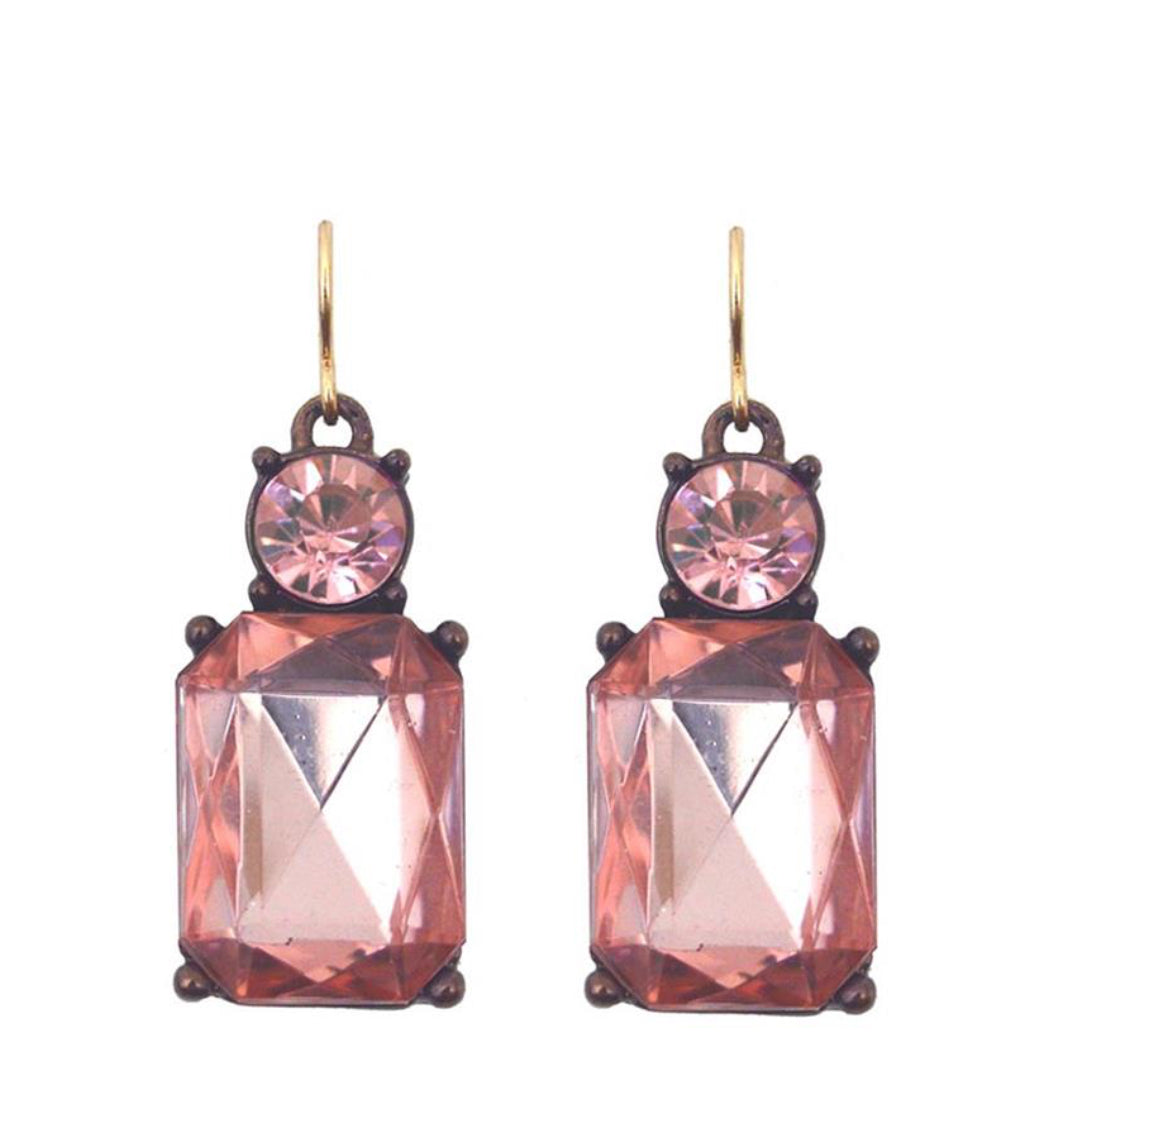 Twin gem hook earrings in rose blush